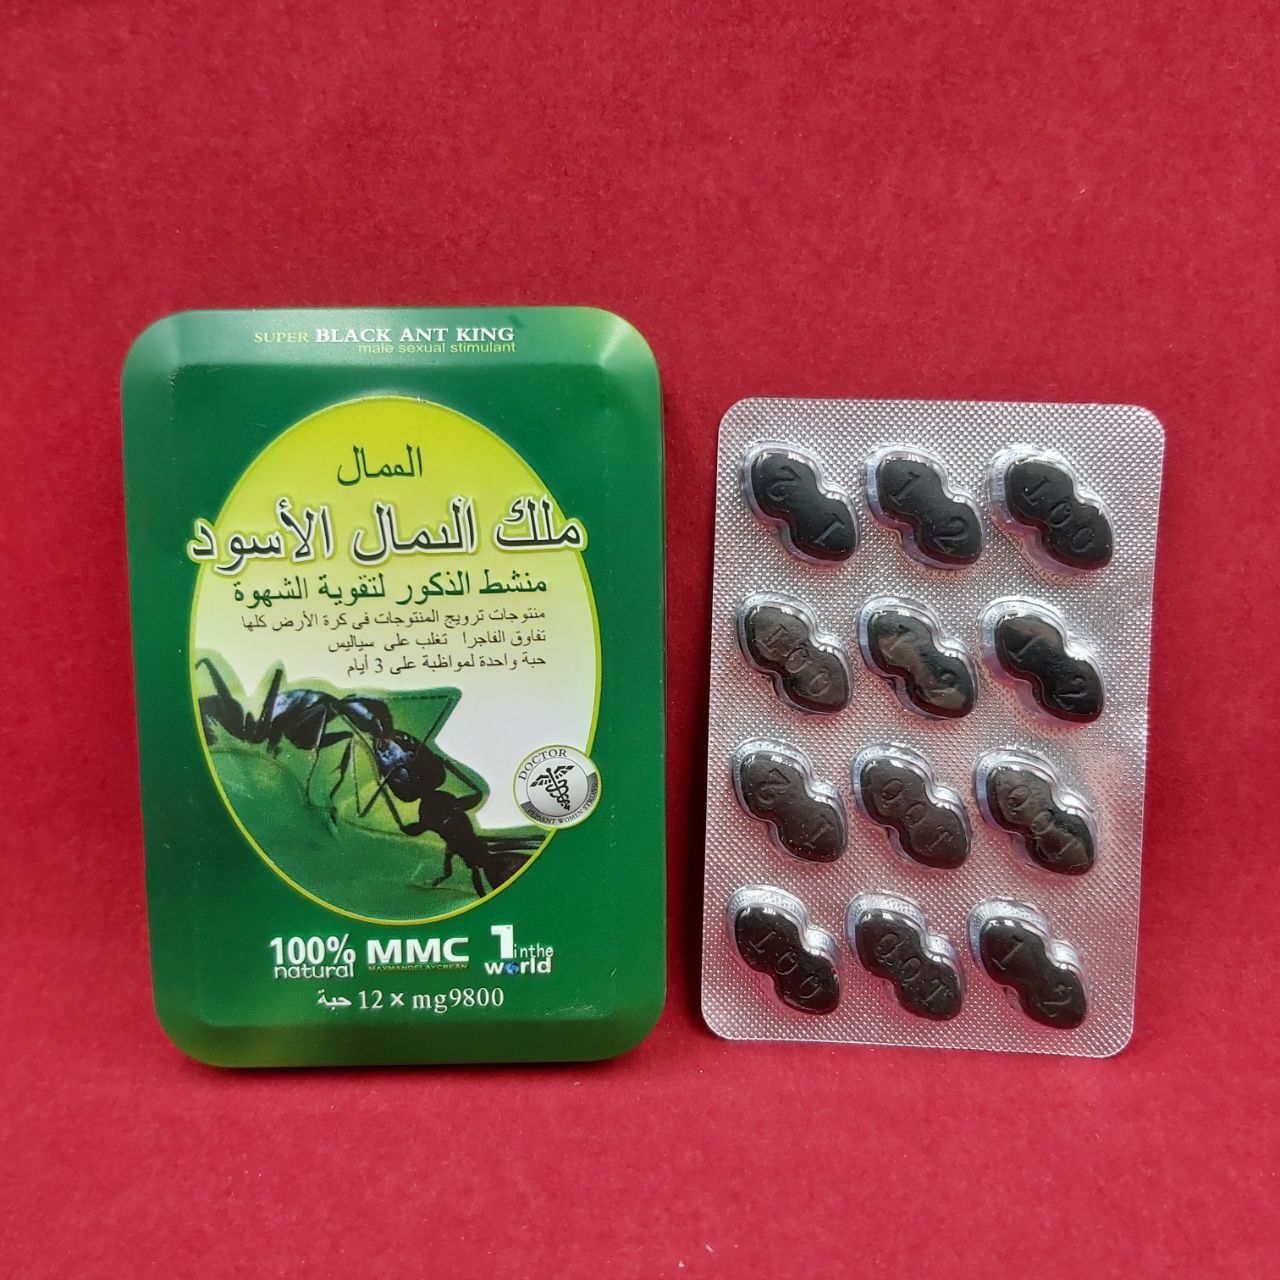 БАД Таблетки для потенции Black Ant King черный муравей